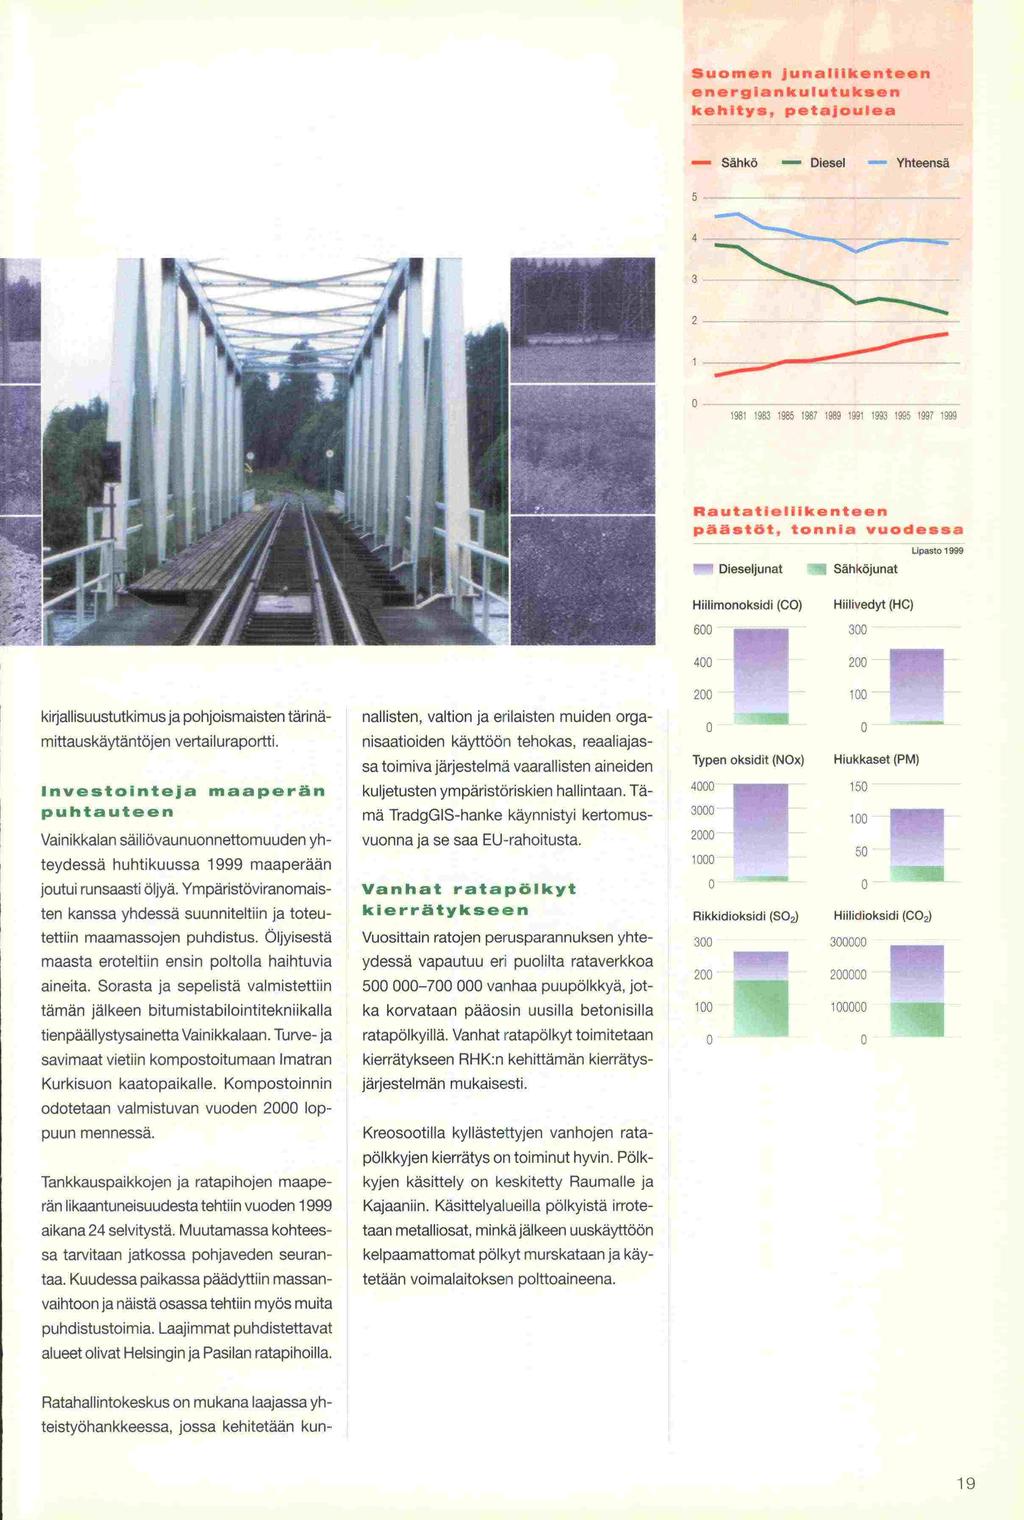 Suomen junaliikenteen energiankulutukeen kehitys, petajouea - Sähkö - Diesel Yhteensä 5 0 -------- ------ - -- 1981 1983 1985 1987 1989 1991 1993 1995 1997 1999 4!